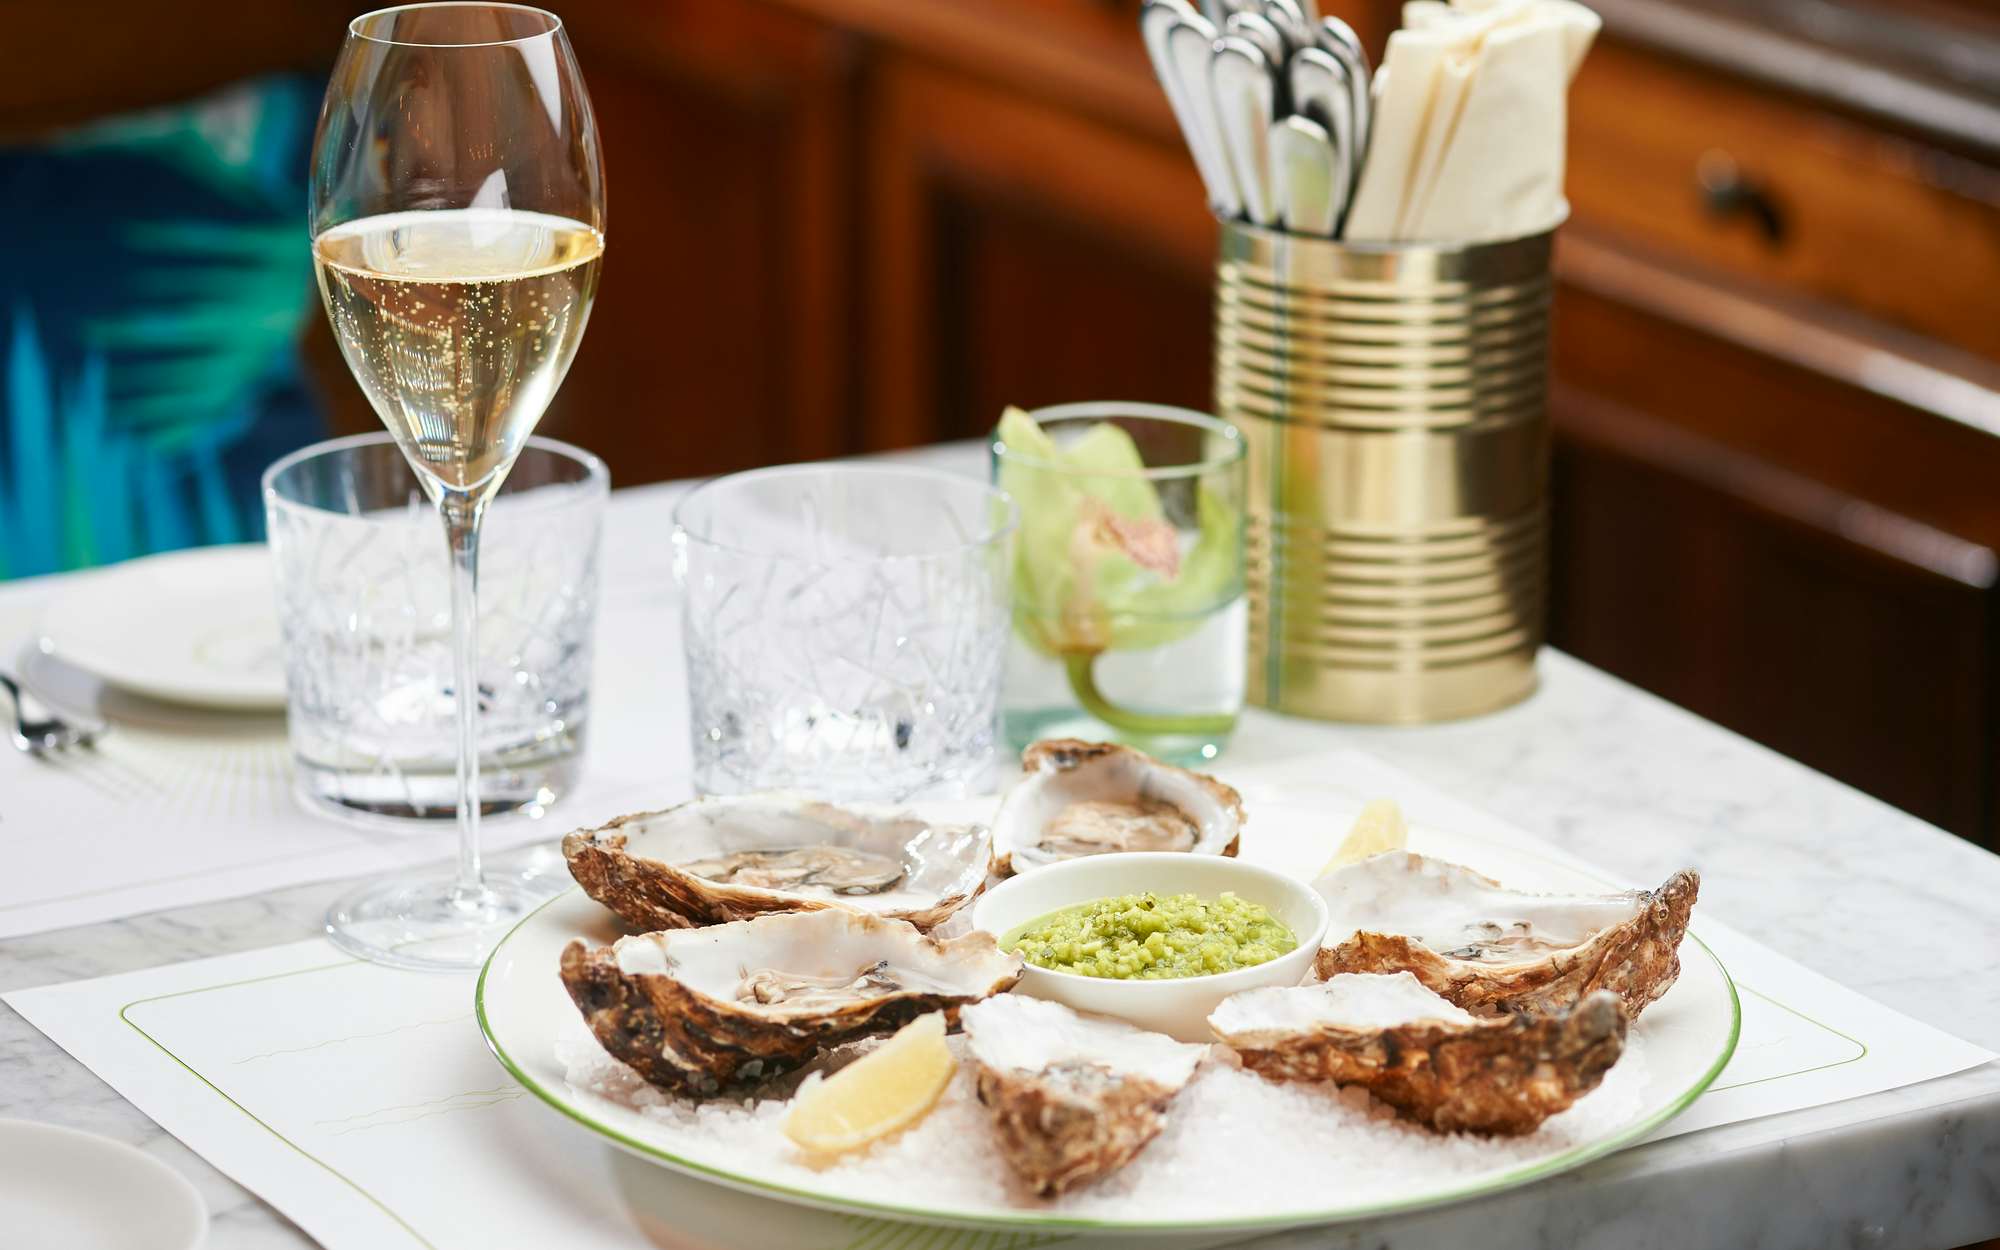 Austern und Champagner - ein beliebtes Duo in der Brasserie Colette Tim Raue